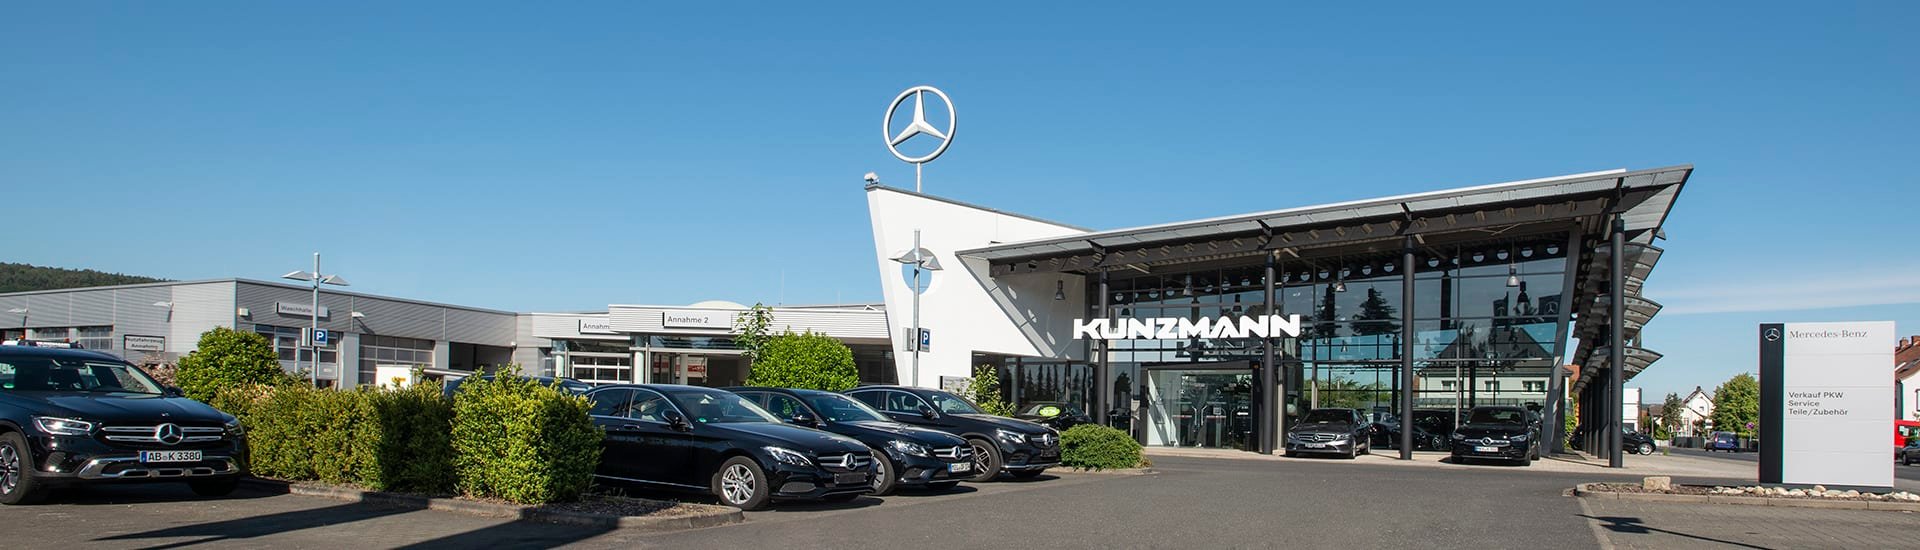 Autohaus Kunzmann Wörth | Mercedes-Benz Pkw, Transporter und Lkw